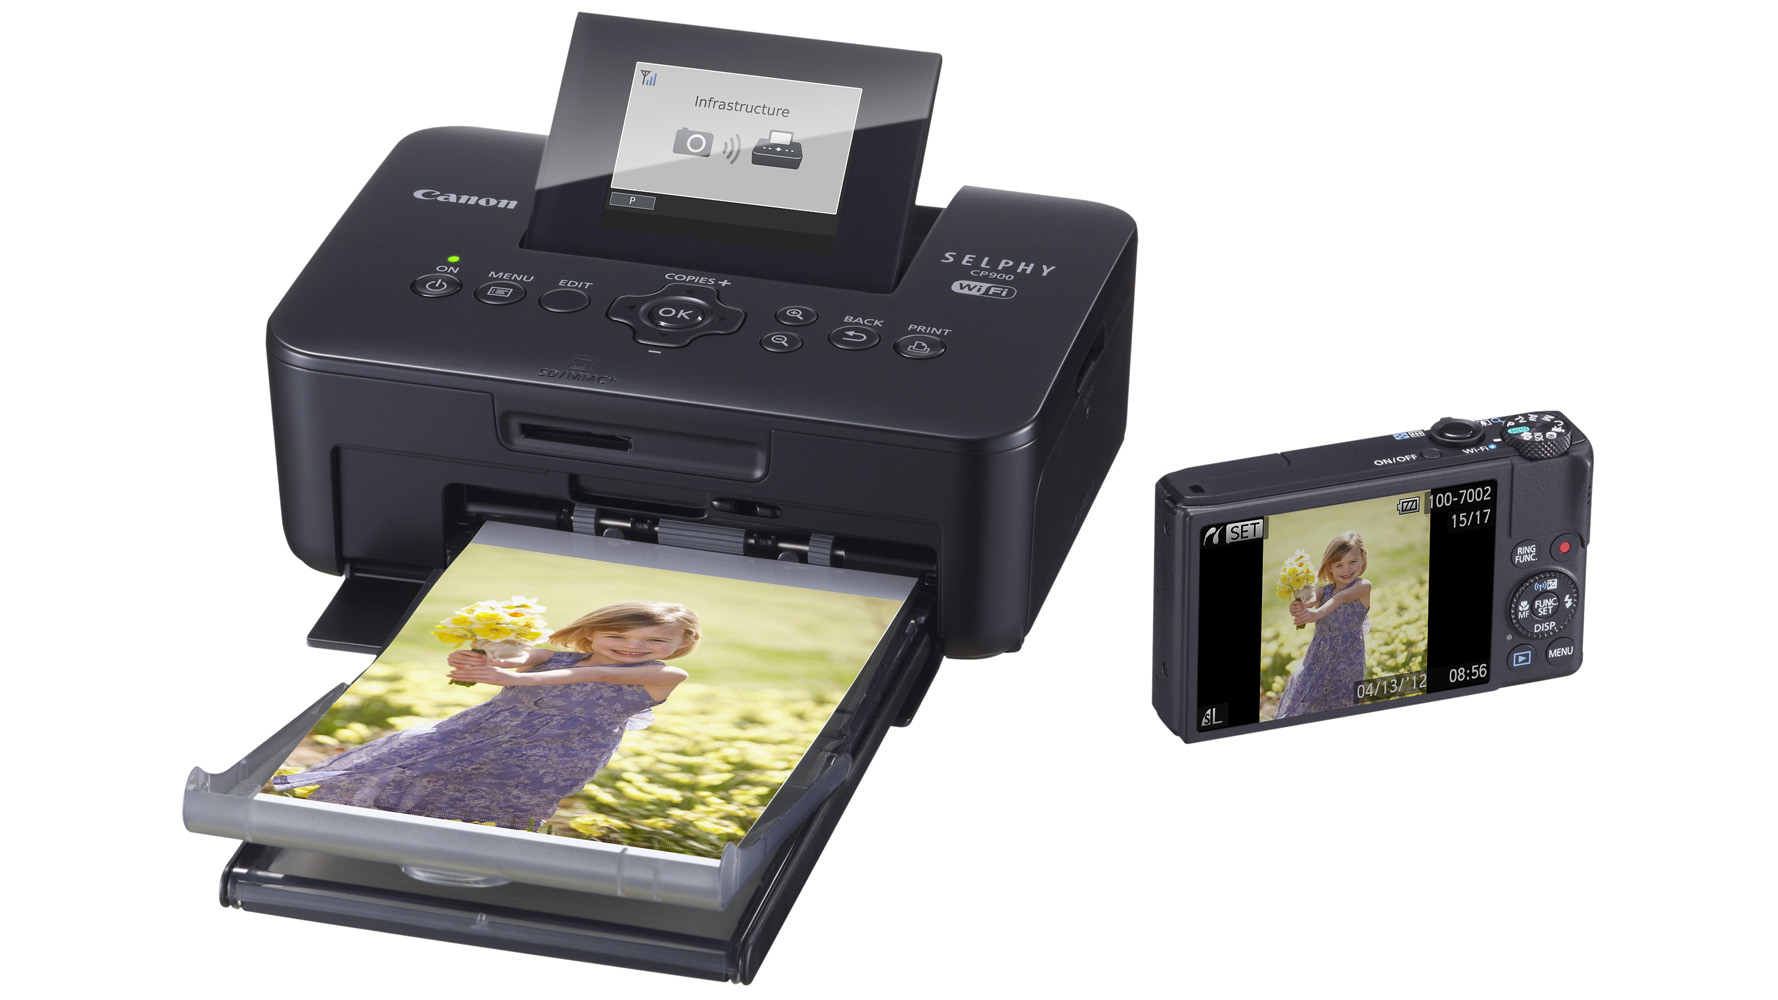 canon easy photo print set printer to use